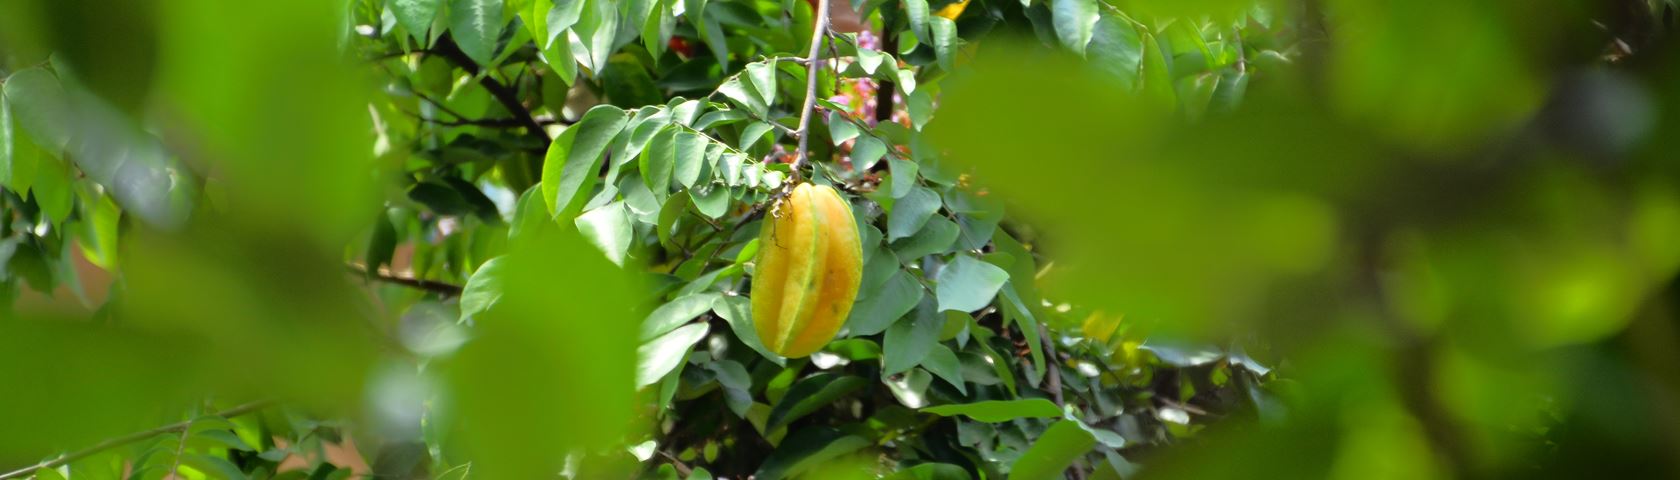 Blimbing Fruit